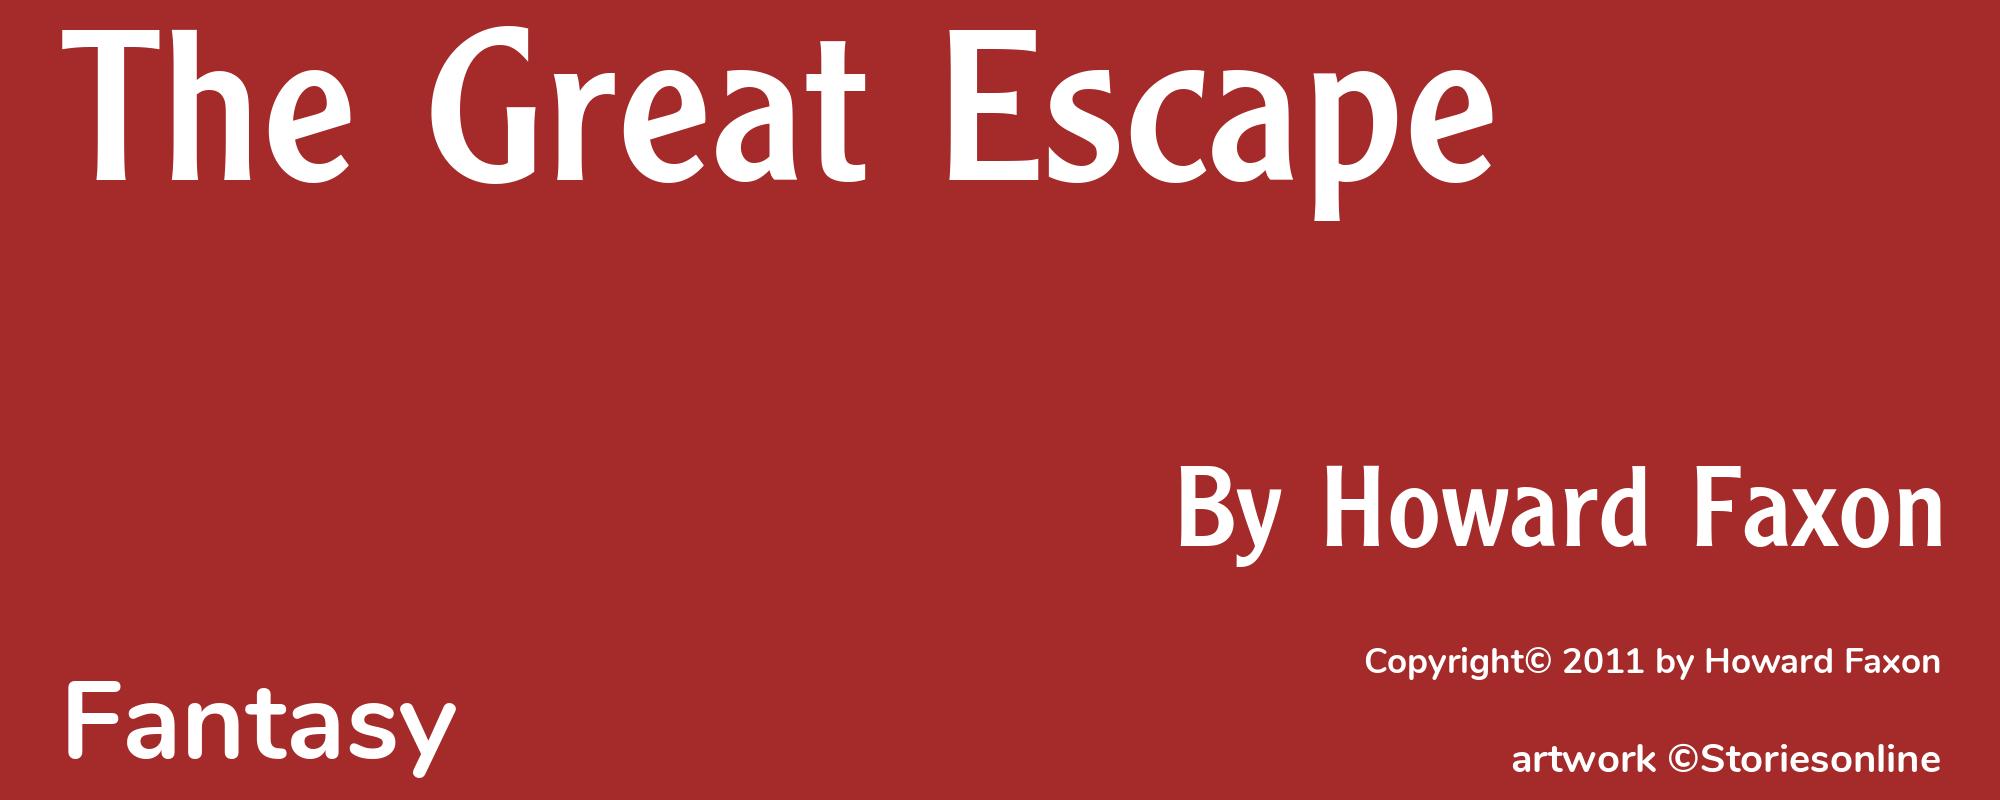 The Great Escape - Cover